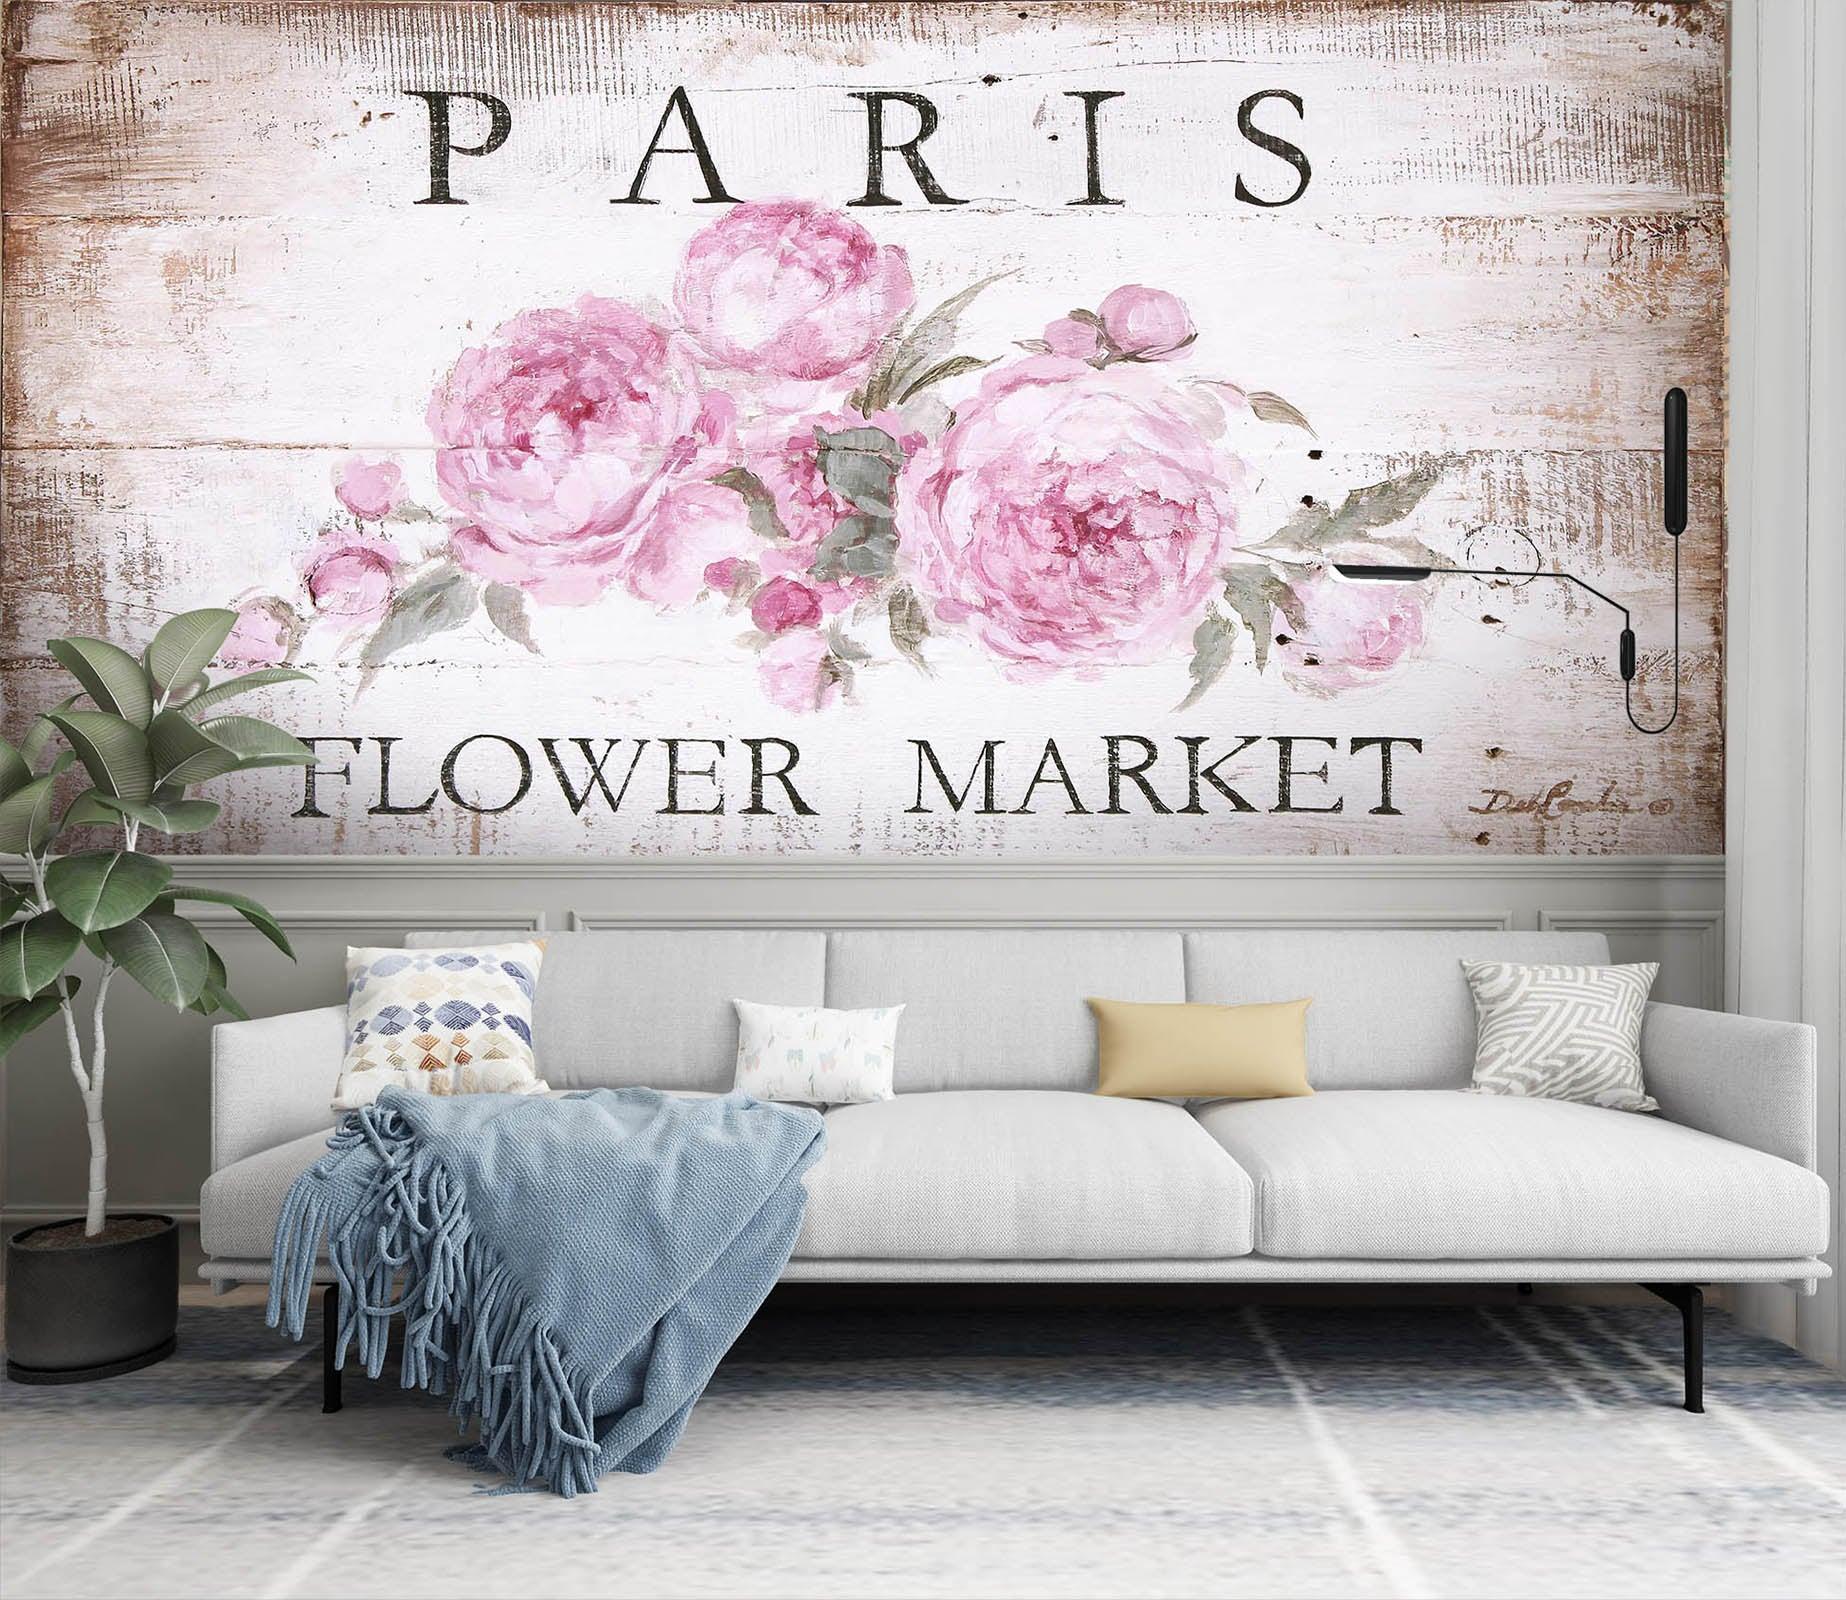 3D Paris Flower 3179 Debi Coules Wall Murals Wallpaper Mural Wall Murals Removable Wallpaper, Self-adhesive Vinyl